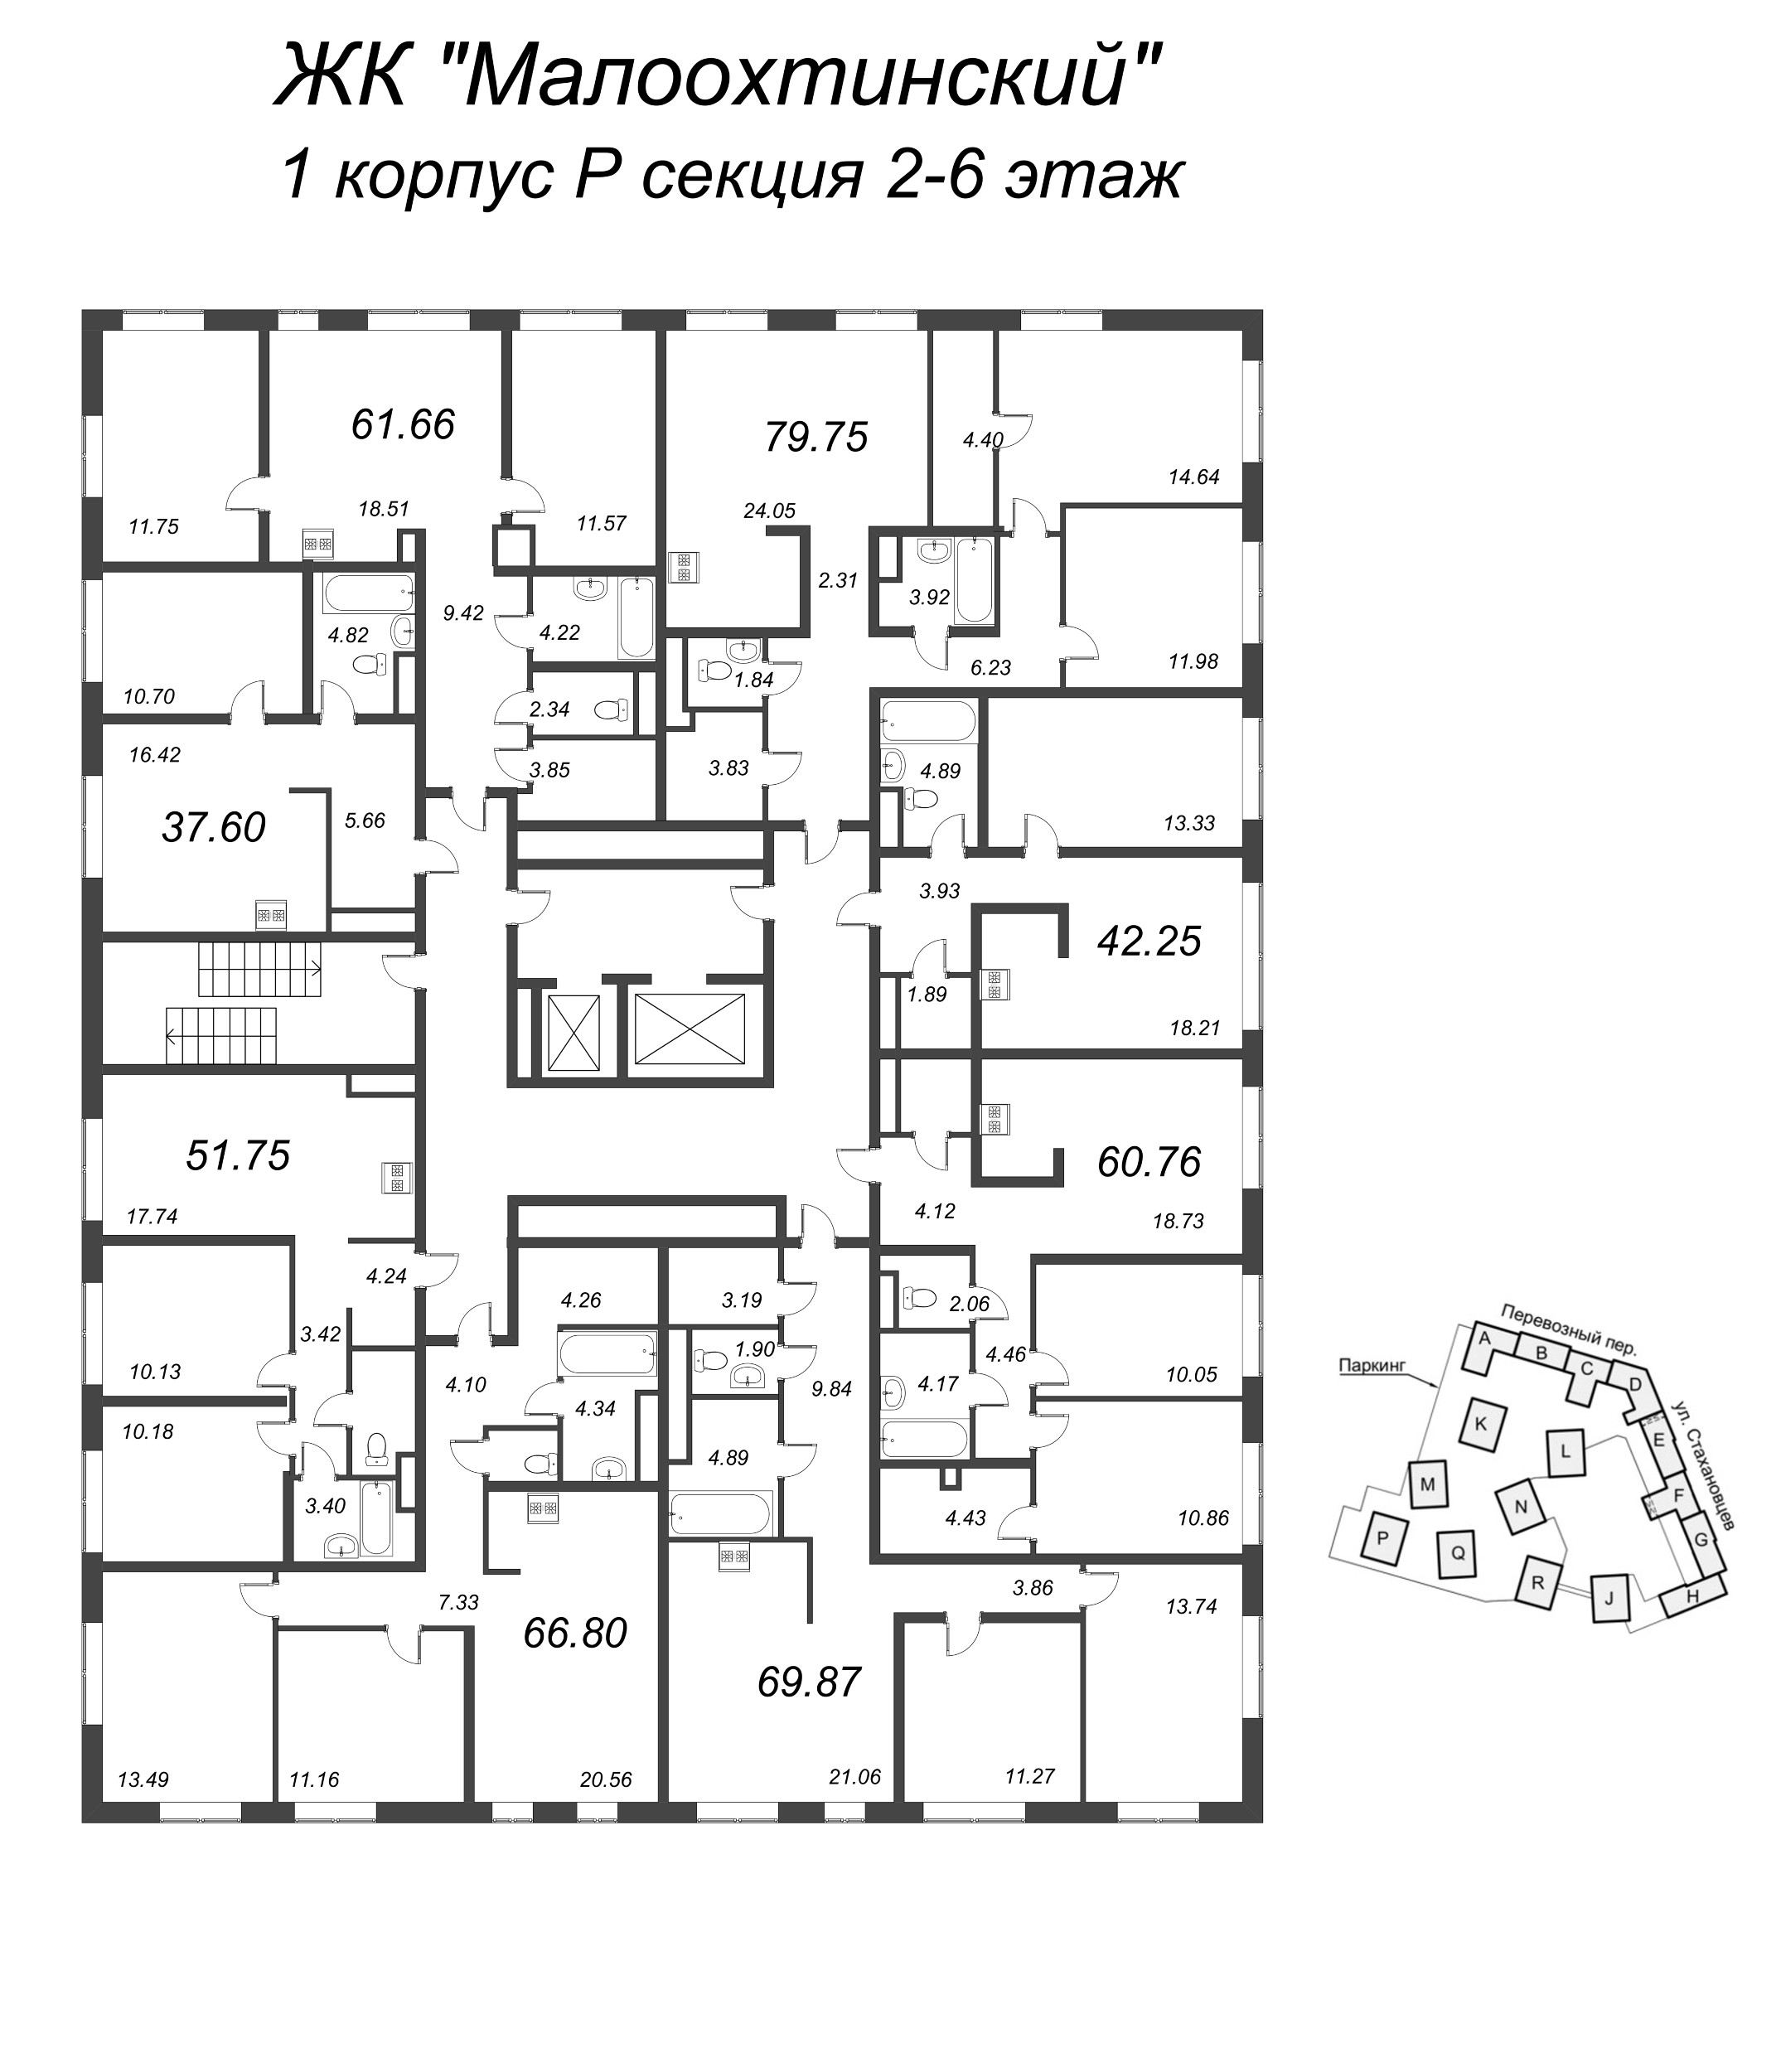 3-комнатная (Евро) квартира, 81.5 м² в ЖК "Малоохтинский, 68" - планировка этажа